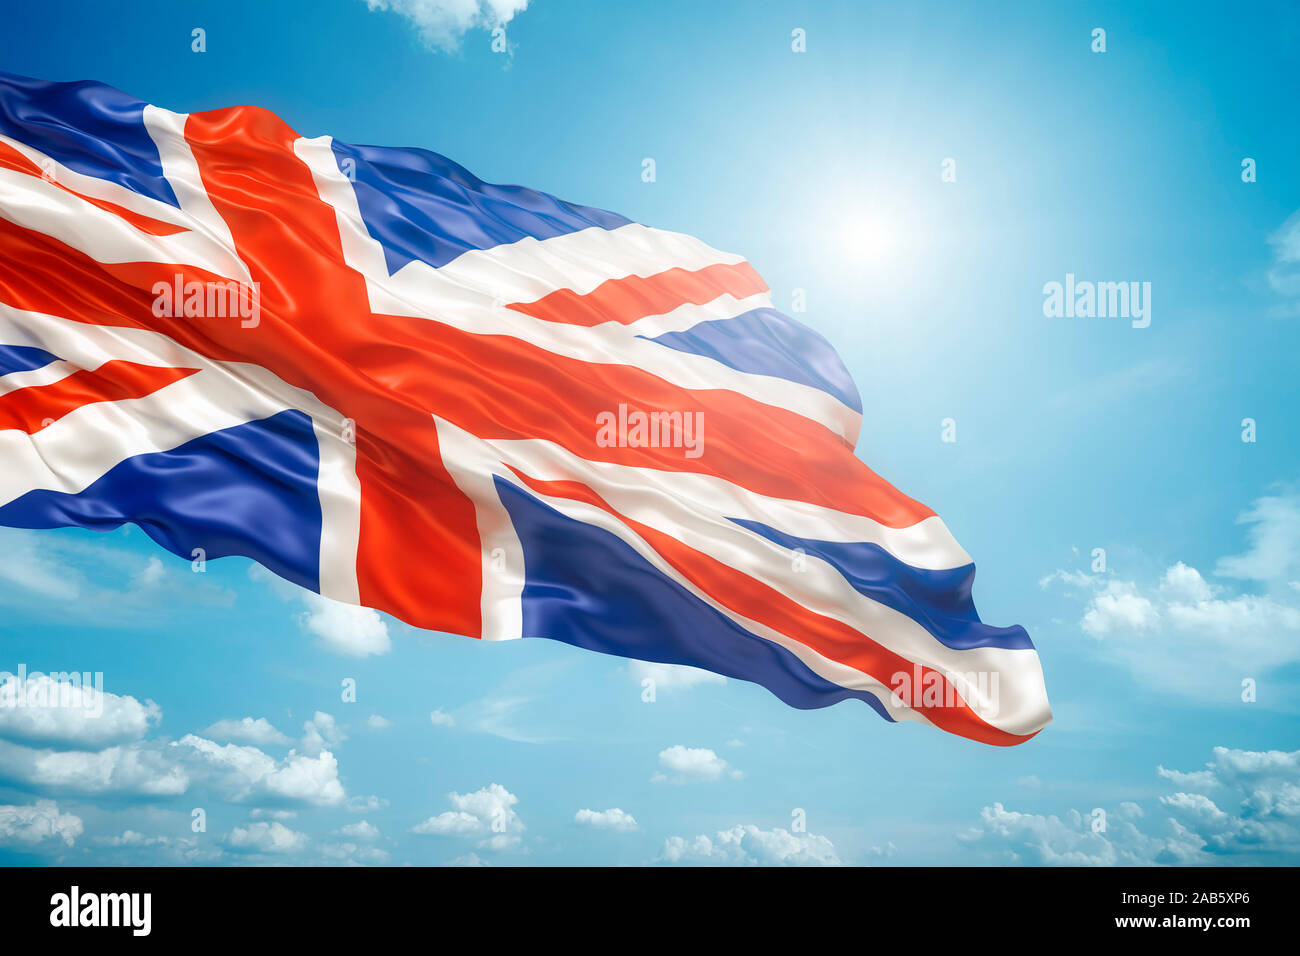 Die wehende Unione bandiera vor einem strahlend blauen Himmel Foto Stock